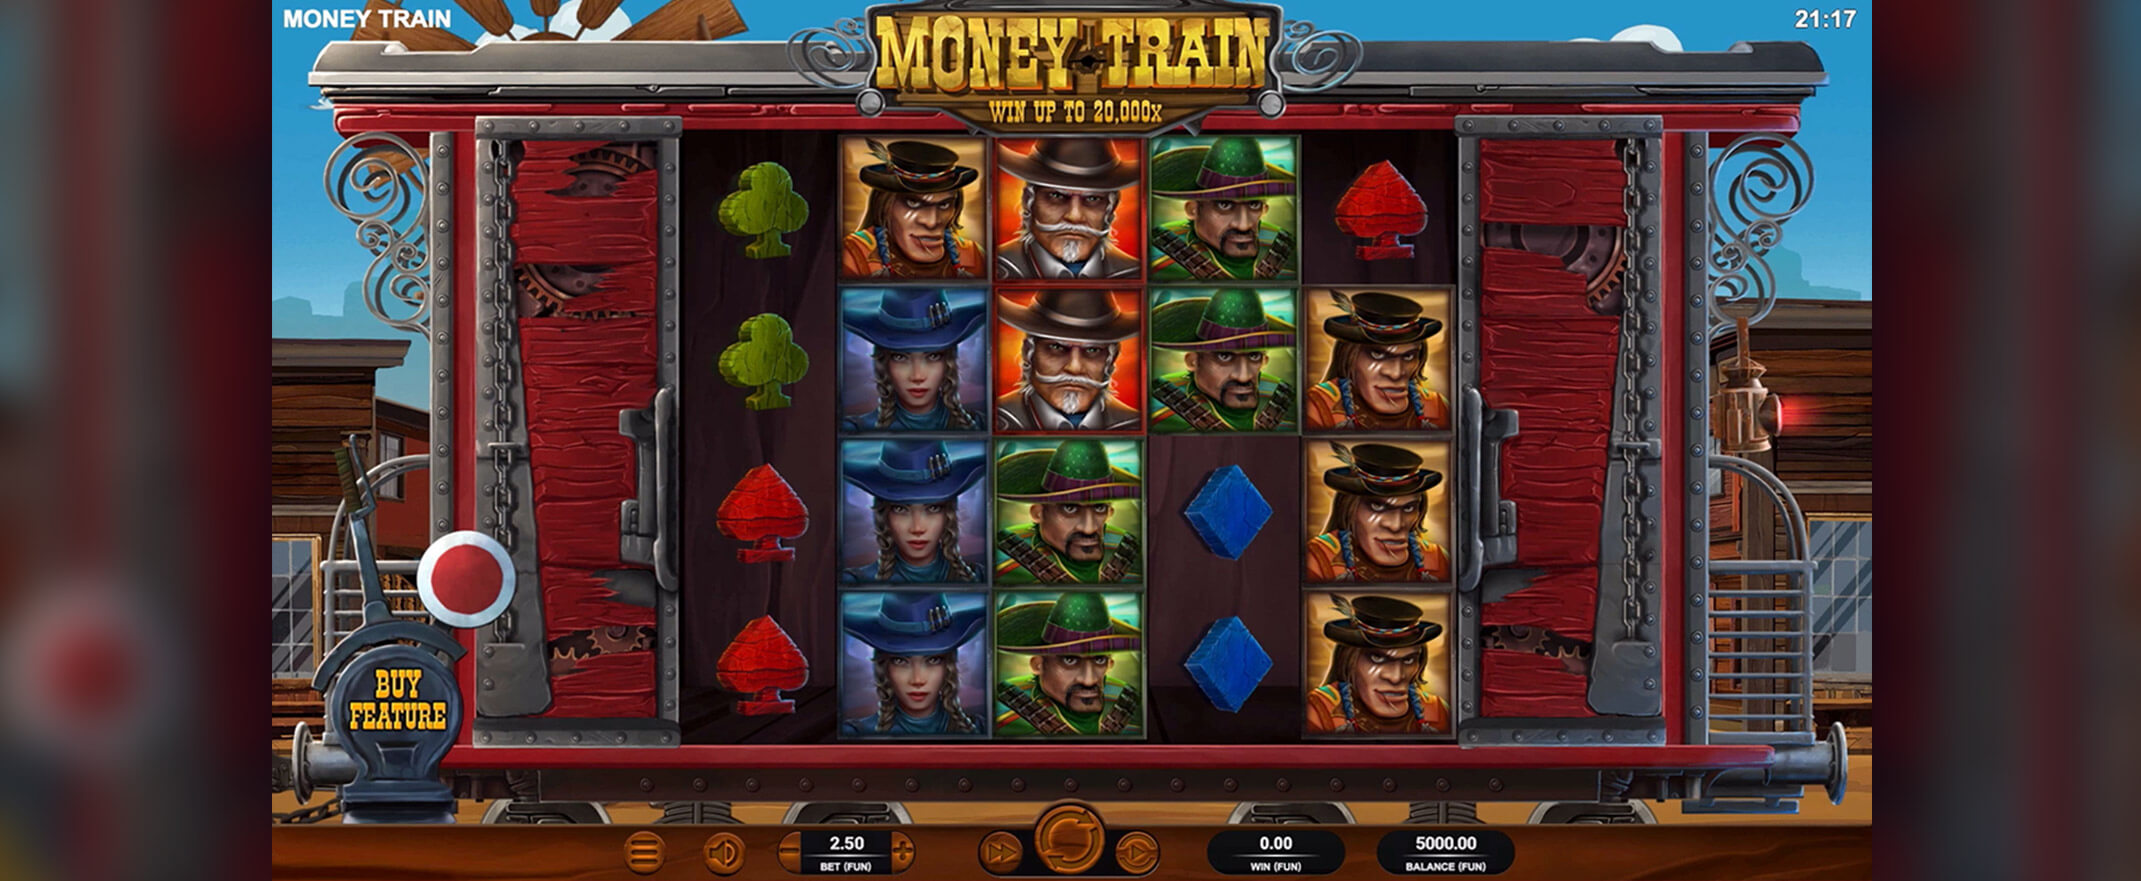 Money Train Spielautomat, Walzen und Symbolen